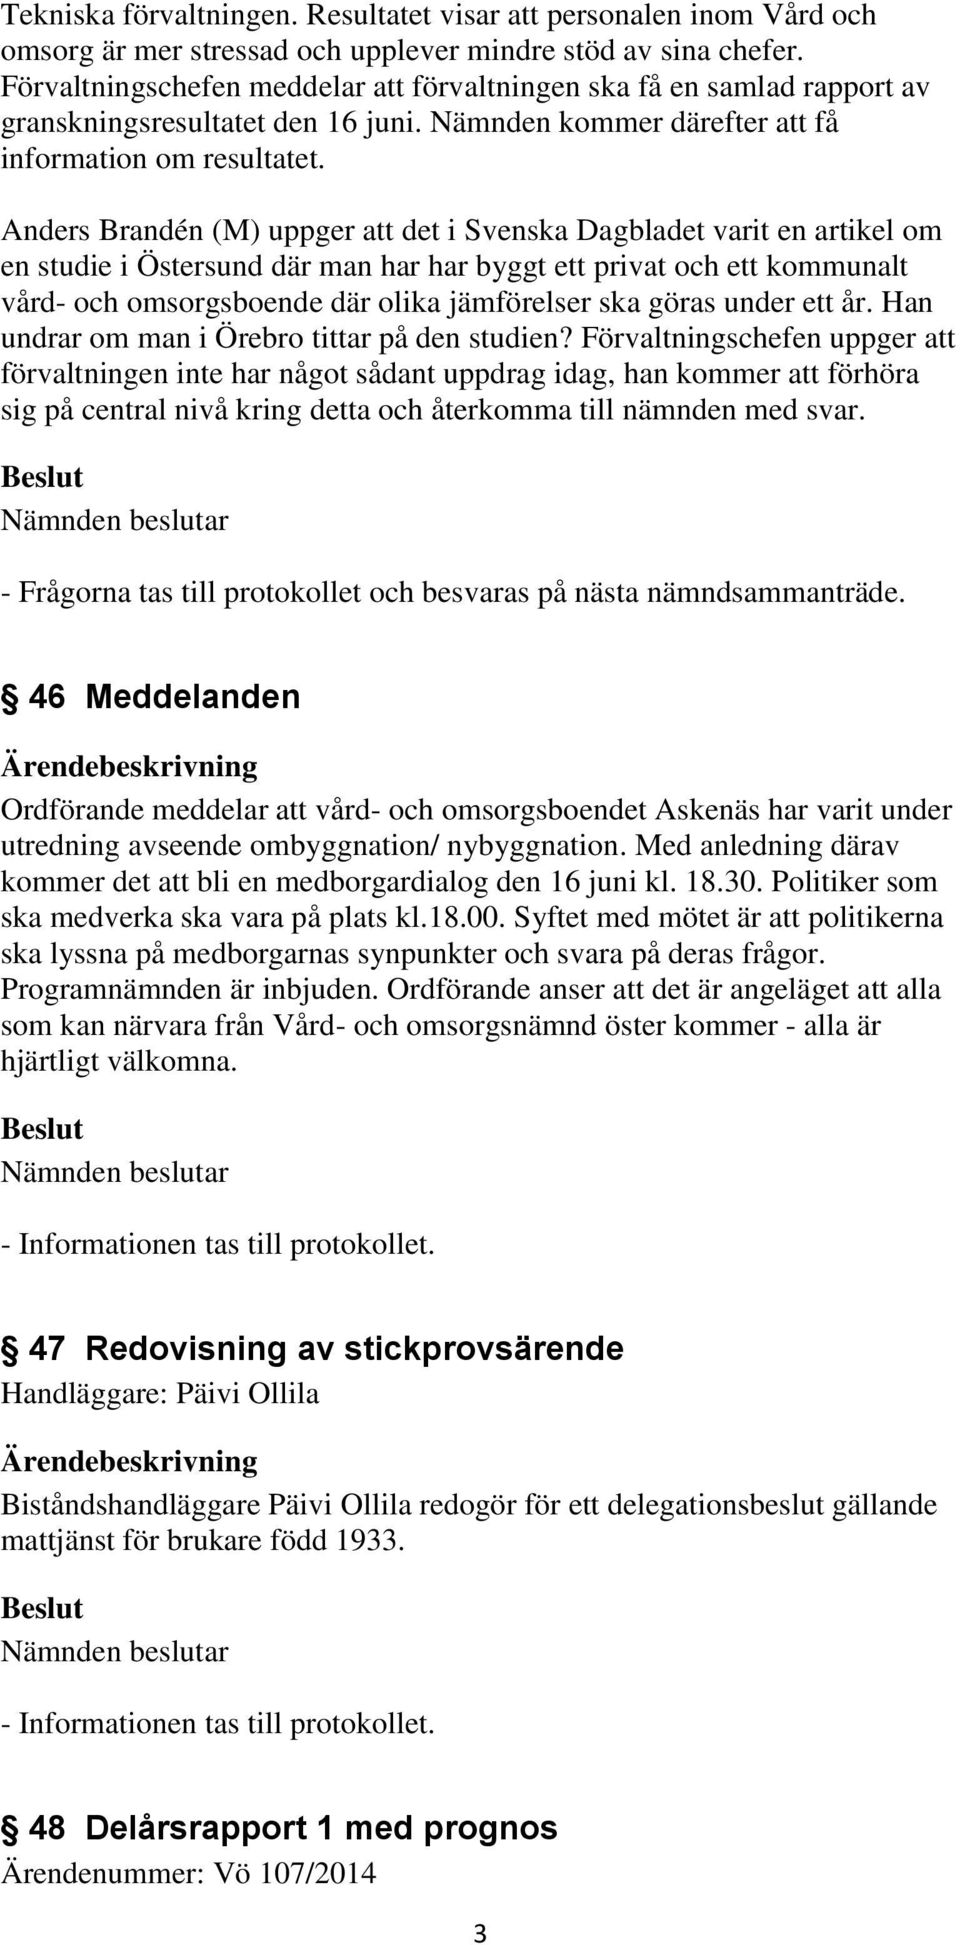 Anders Brandén (M) uppger att det i Svenska Dagbladet varit en artikel om en studie i Östersund där man har har byggt ett privat och ett kommunalt vård- och omsorgsboende där olika jämförelser ska